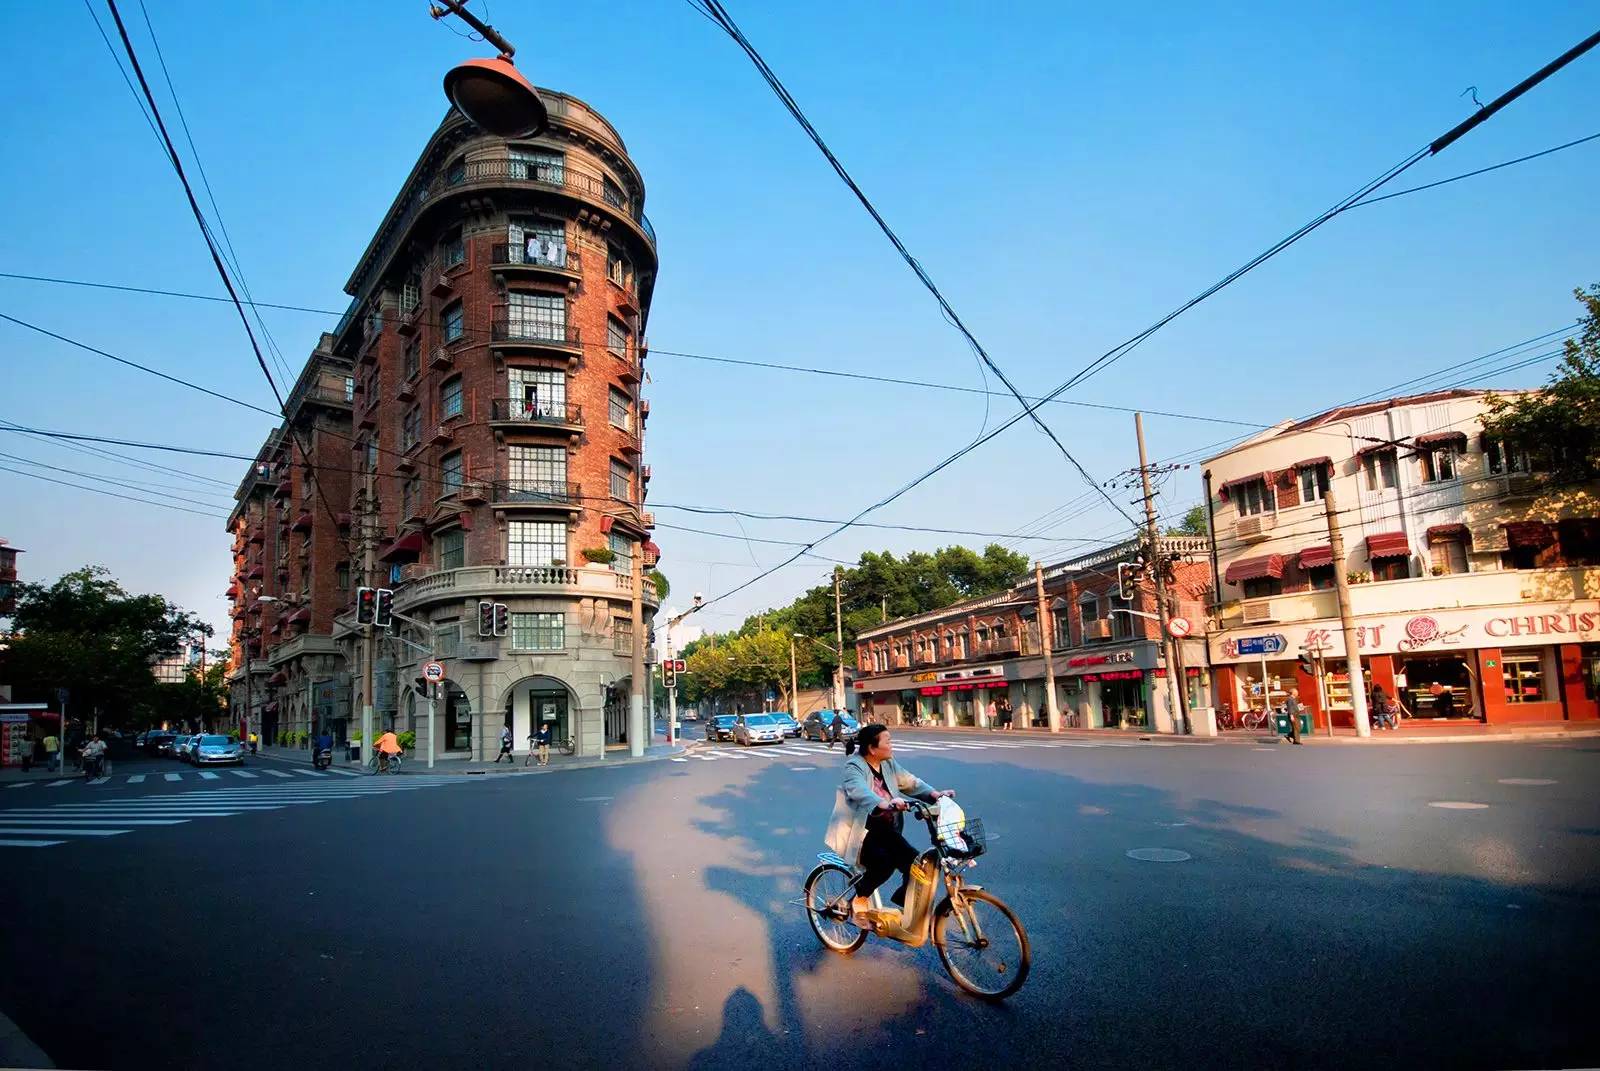 上海最美骑行路线出炉,用心感受这座城市!这几